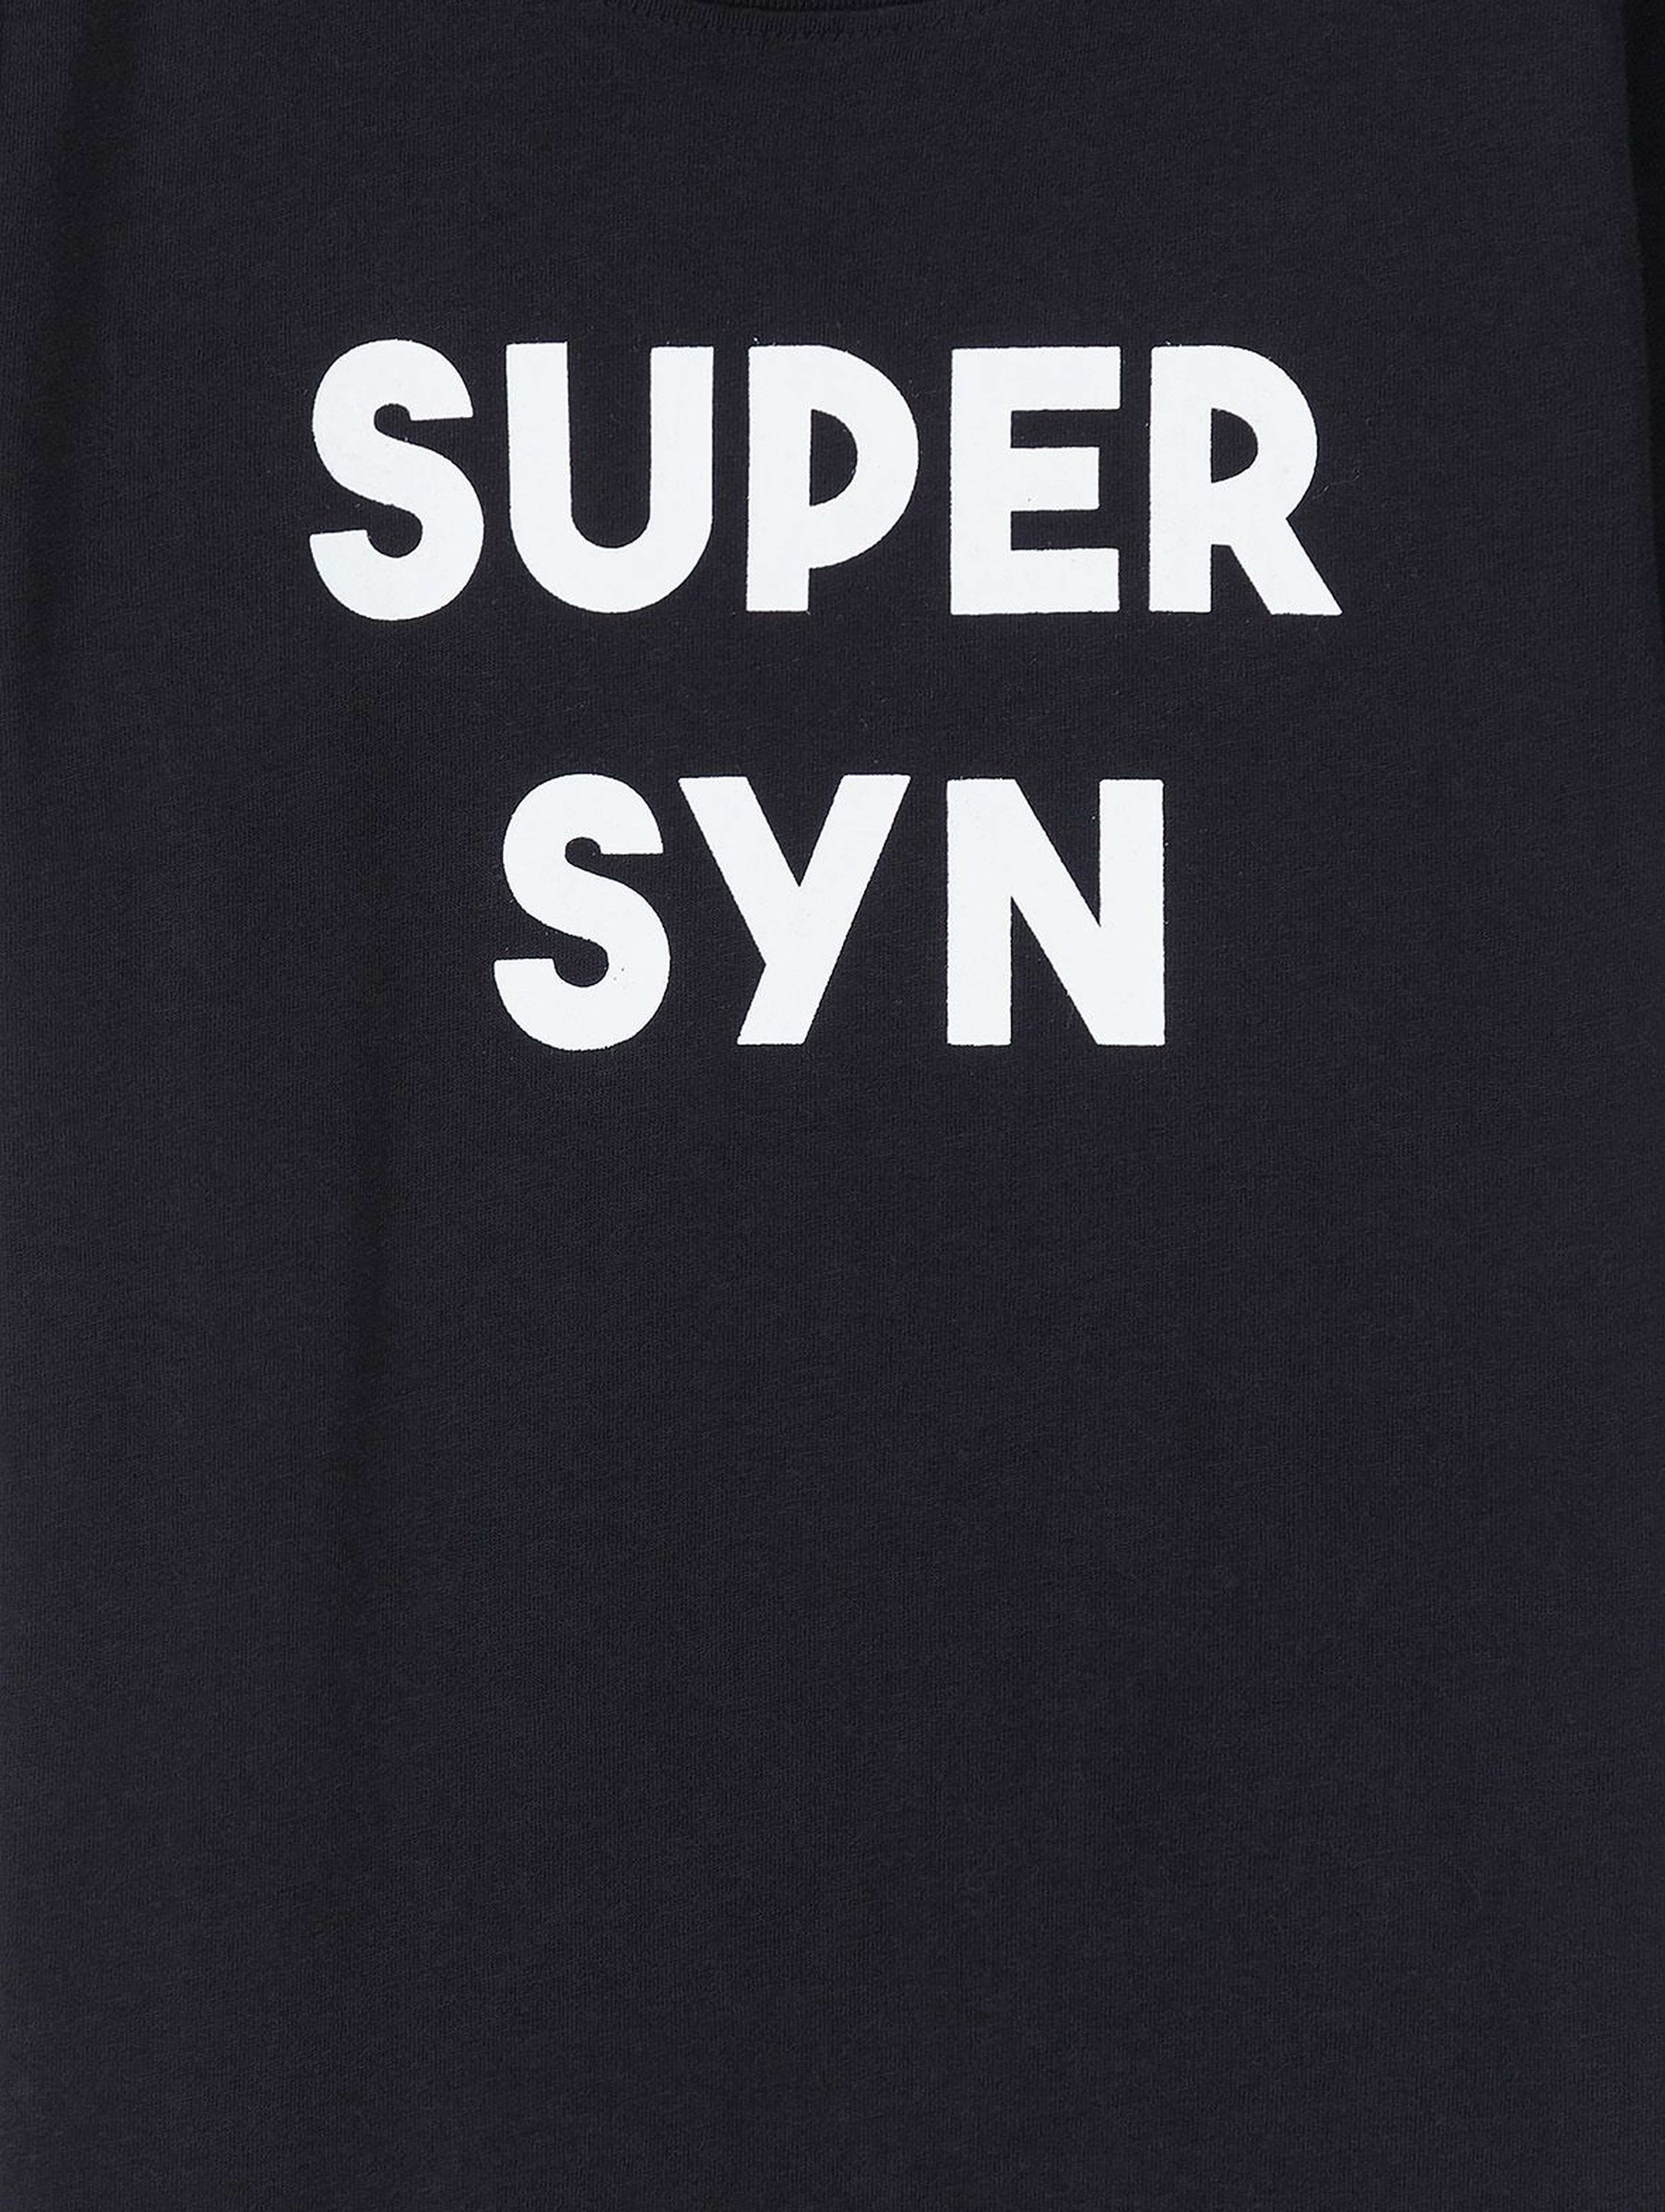 Bawełniany t-shirt chłopięcy czarny z napisem- Super Syn- ubrania dla całej rodziny